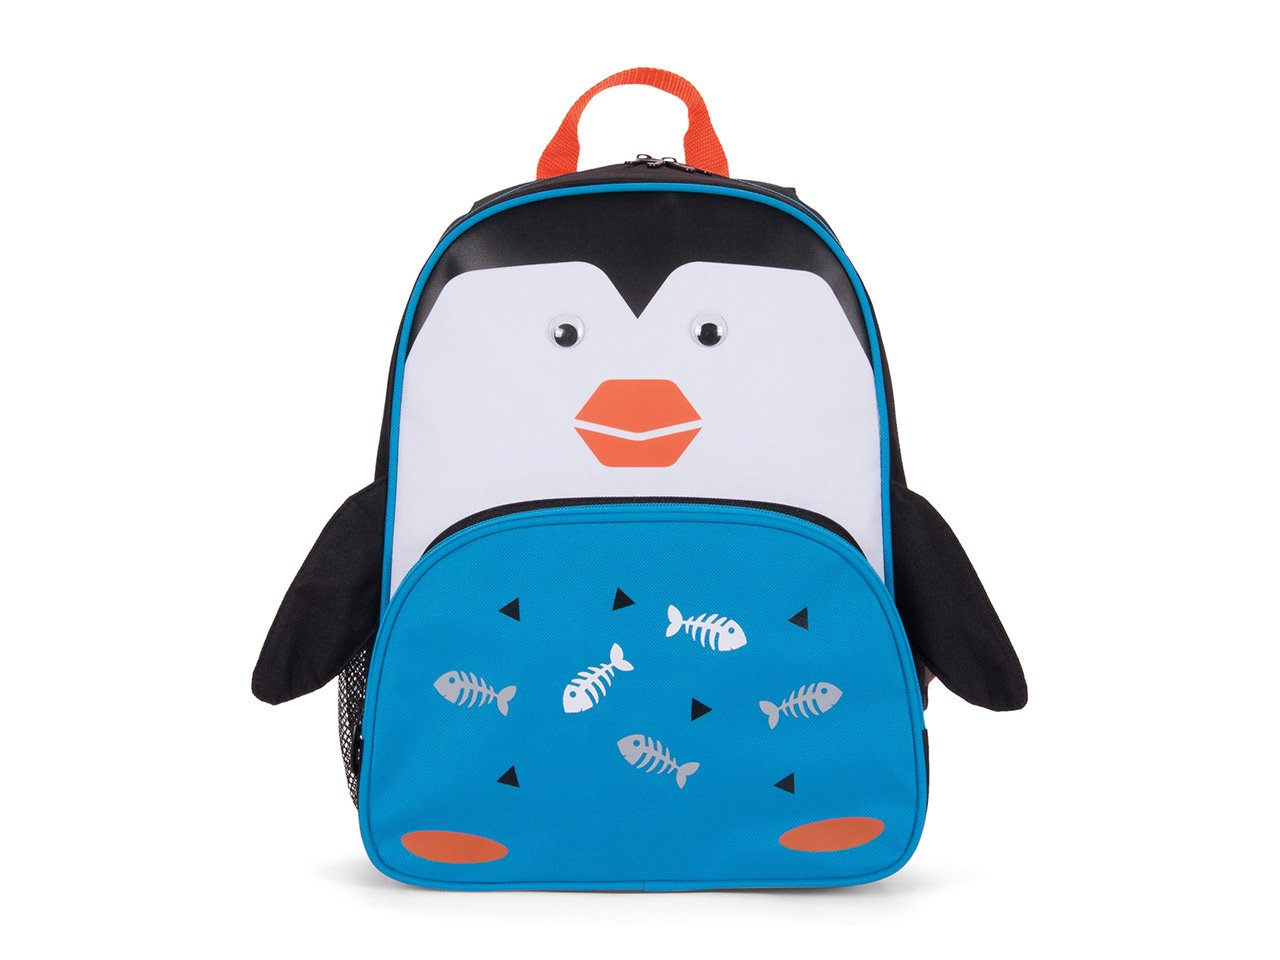 Tracker Penguin Backpack